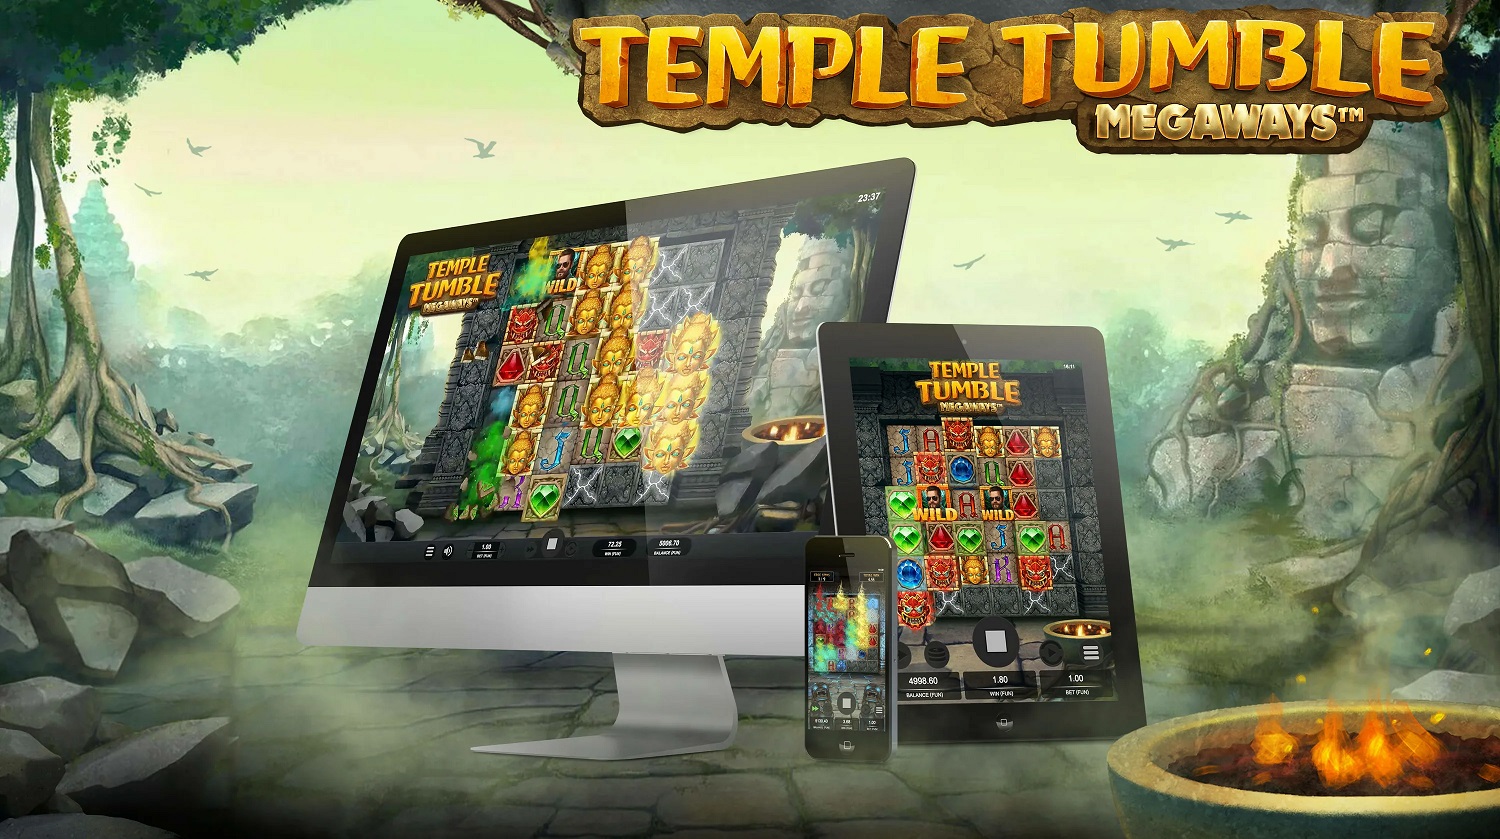 Temple Tumble Megaways post thumbnail image